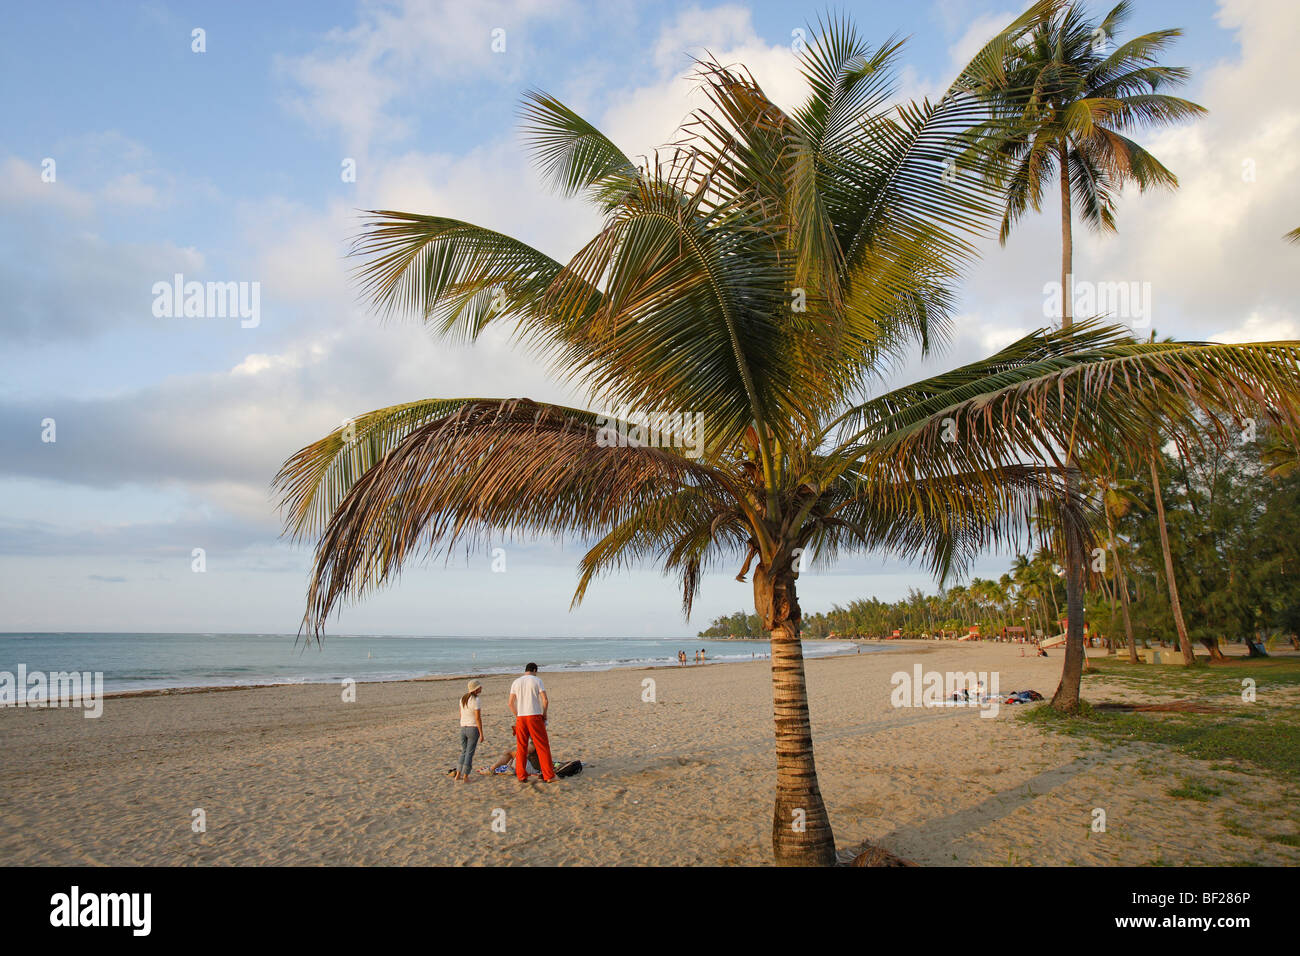 Las personas y las palmeras en la playa bajo el cielo nublado, Luquillo, Puerto Rico, el Caribe, América Foto de stock